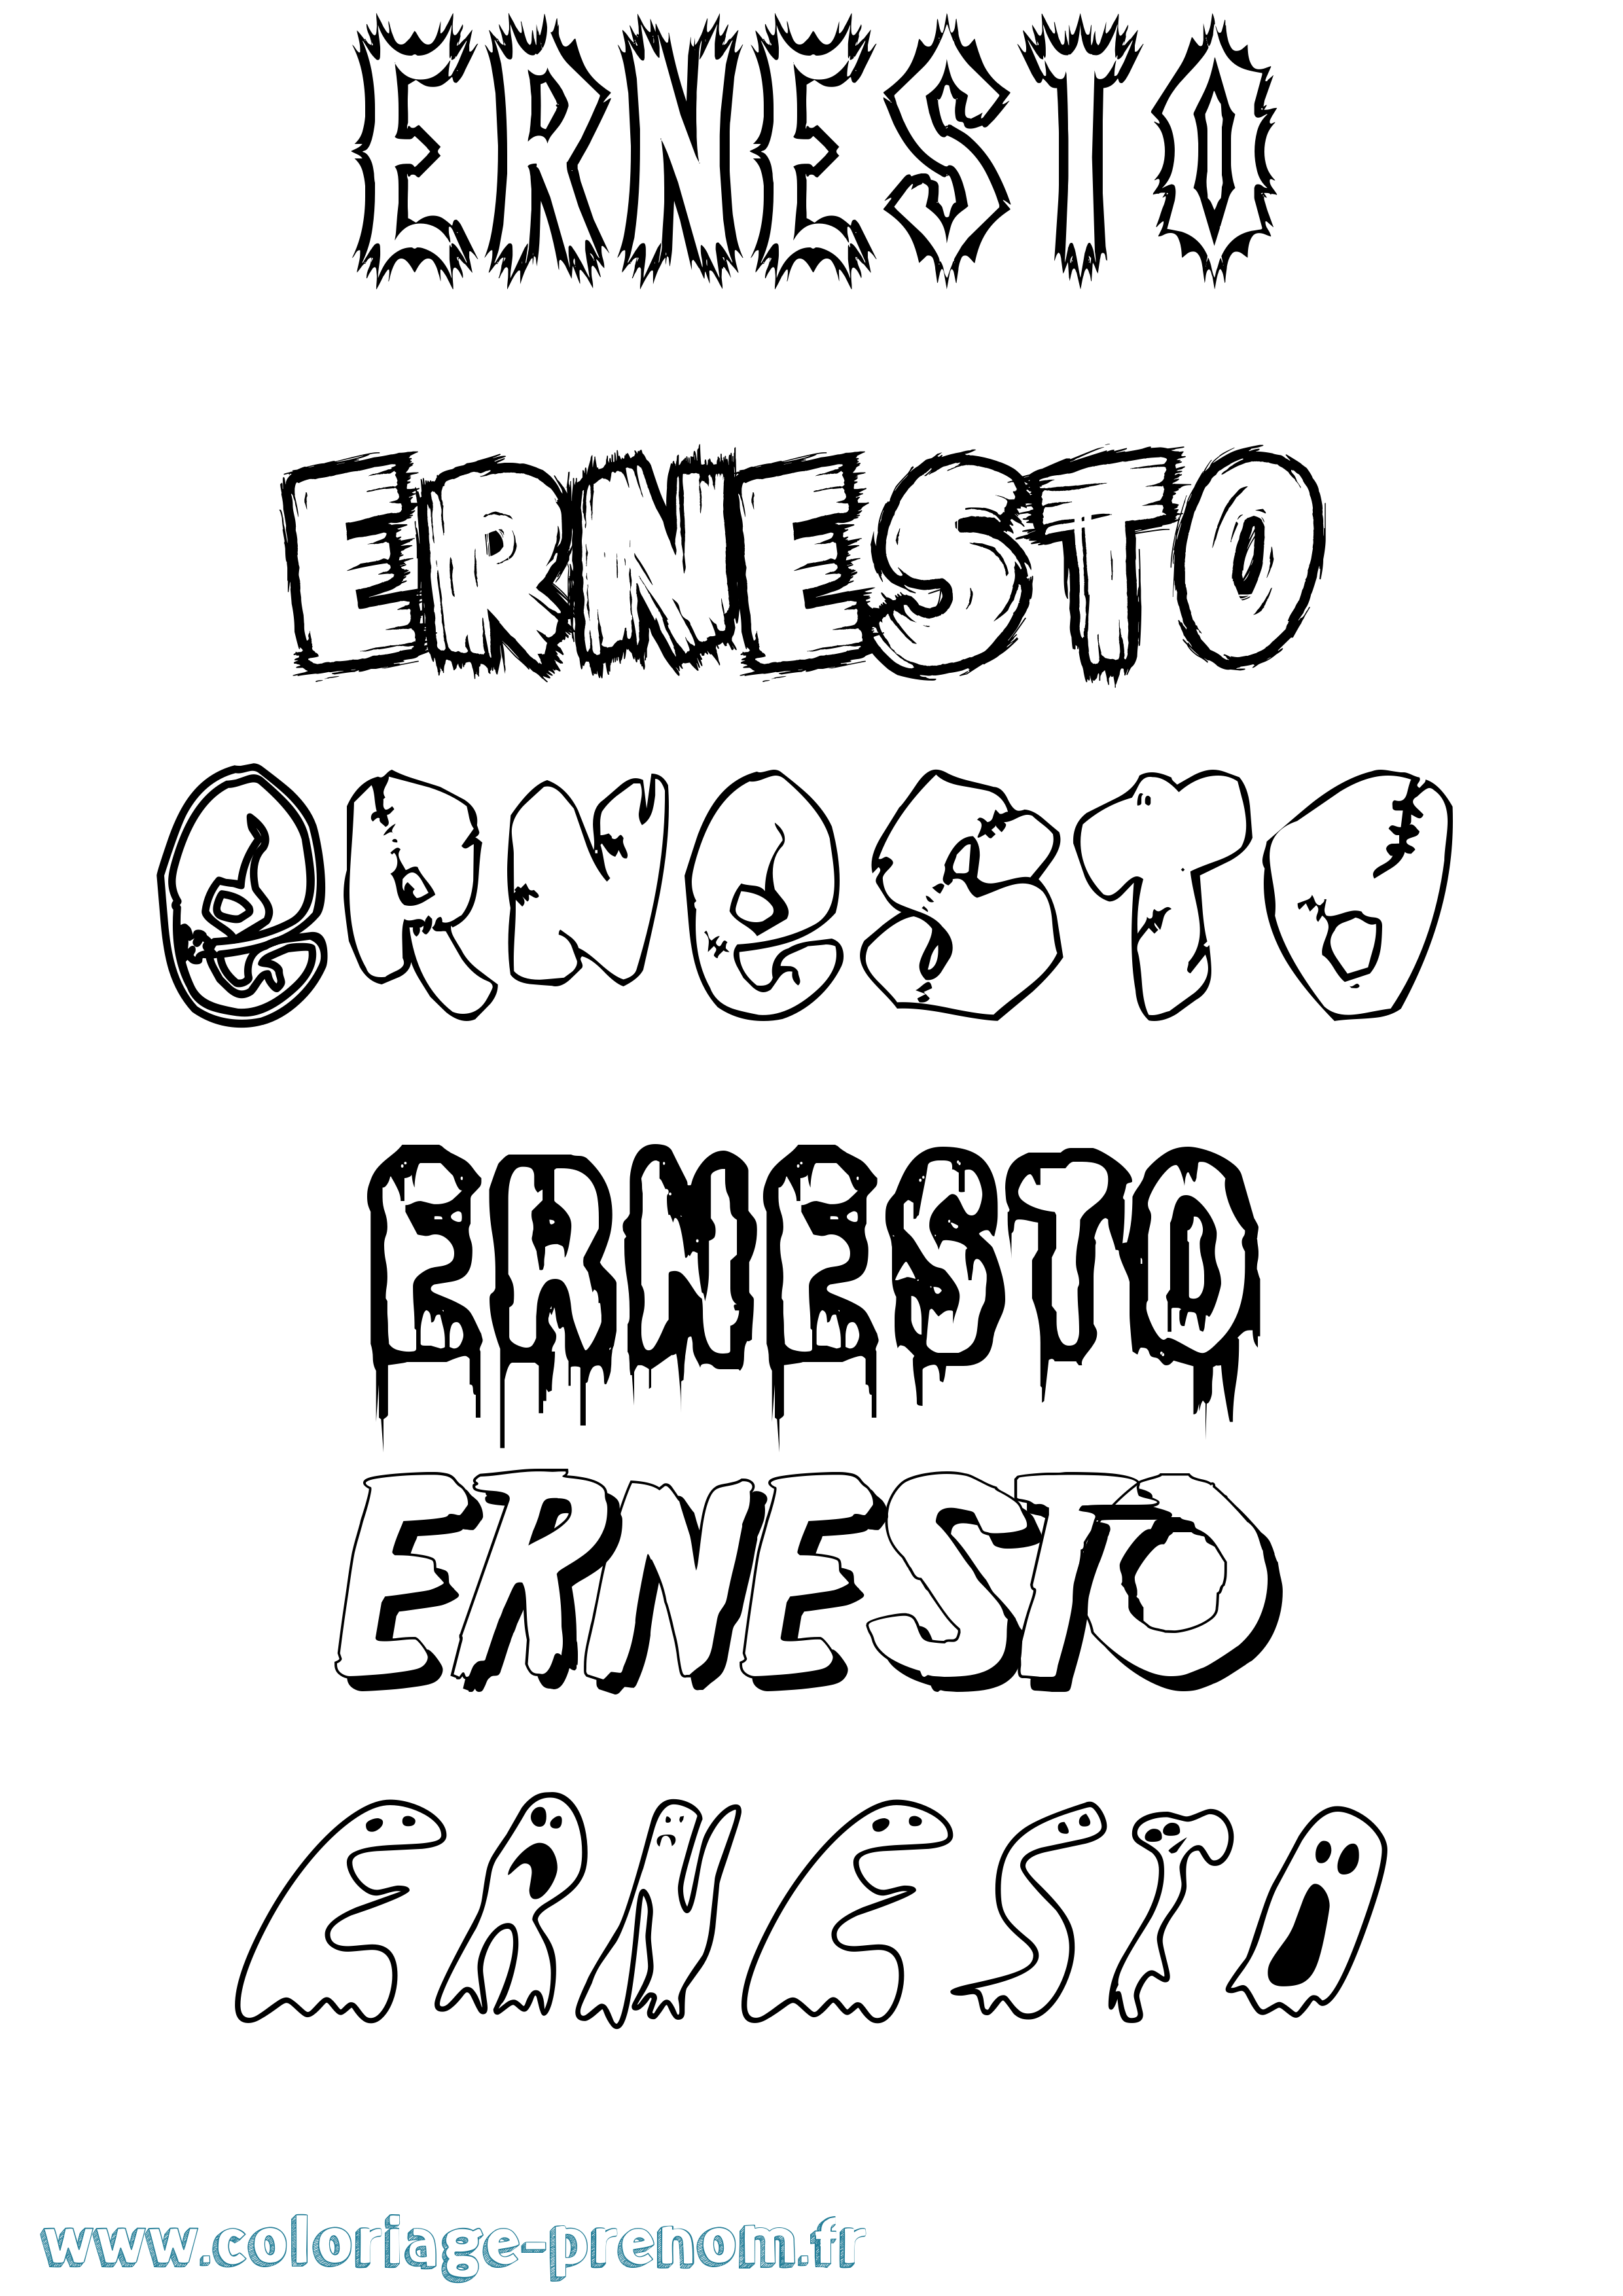 Coloriage prénom Ernesto Frisson